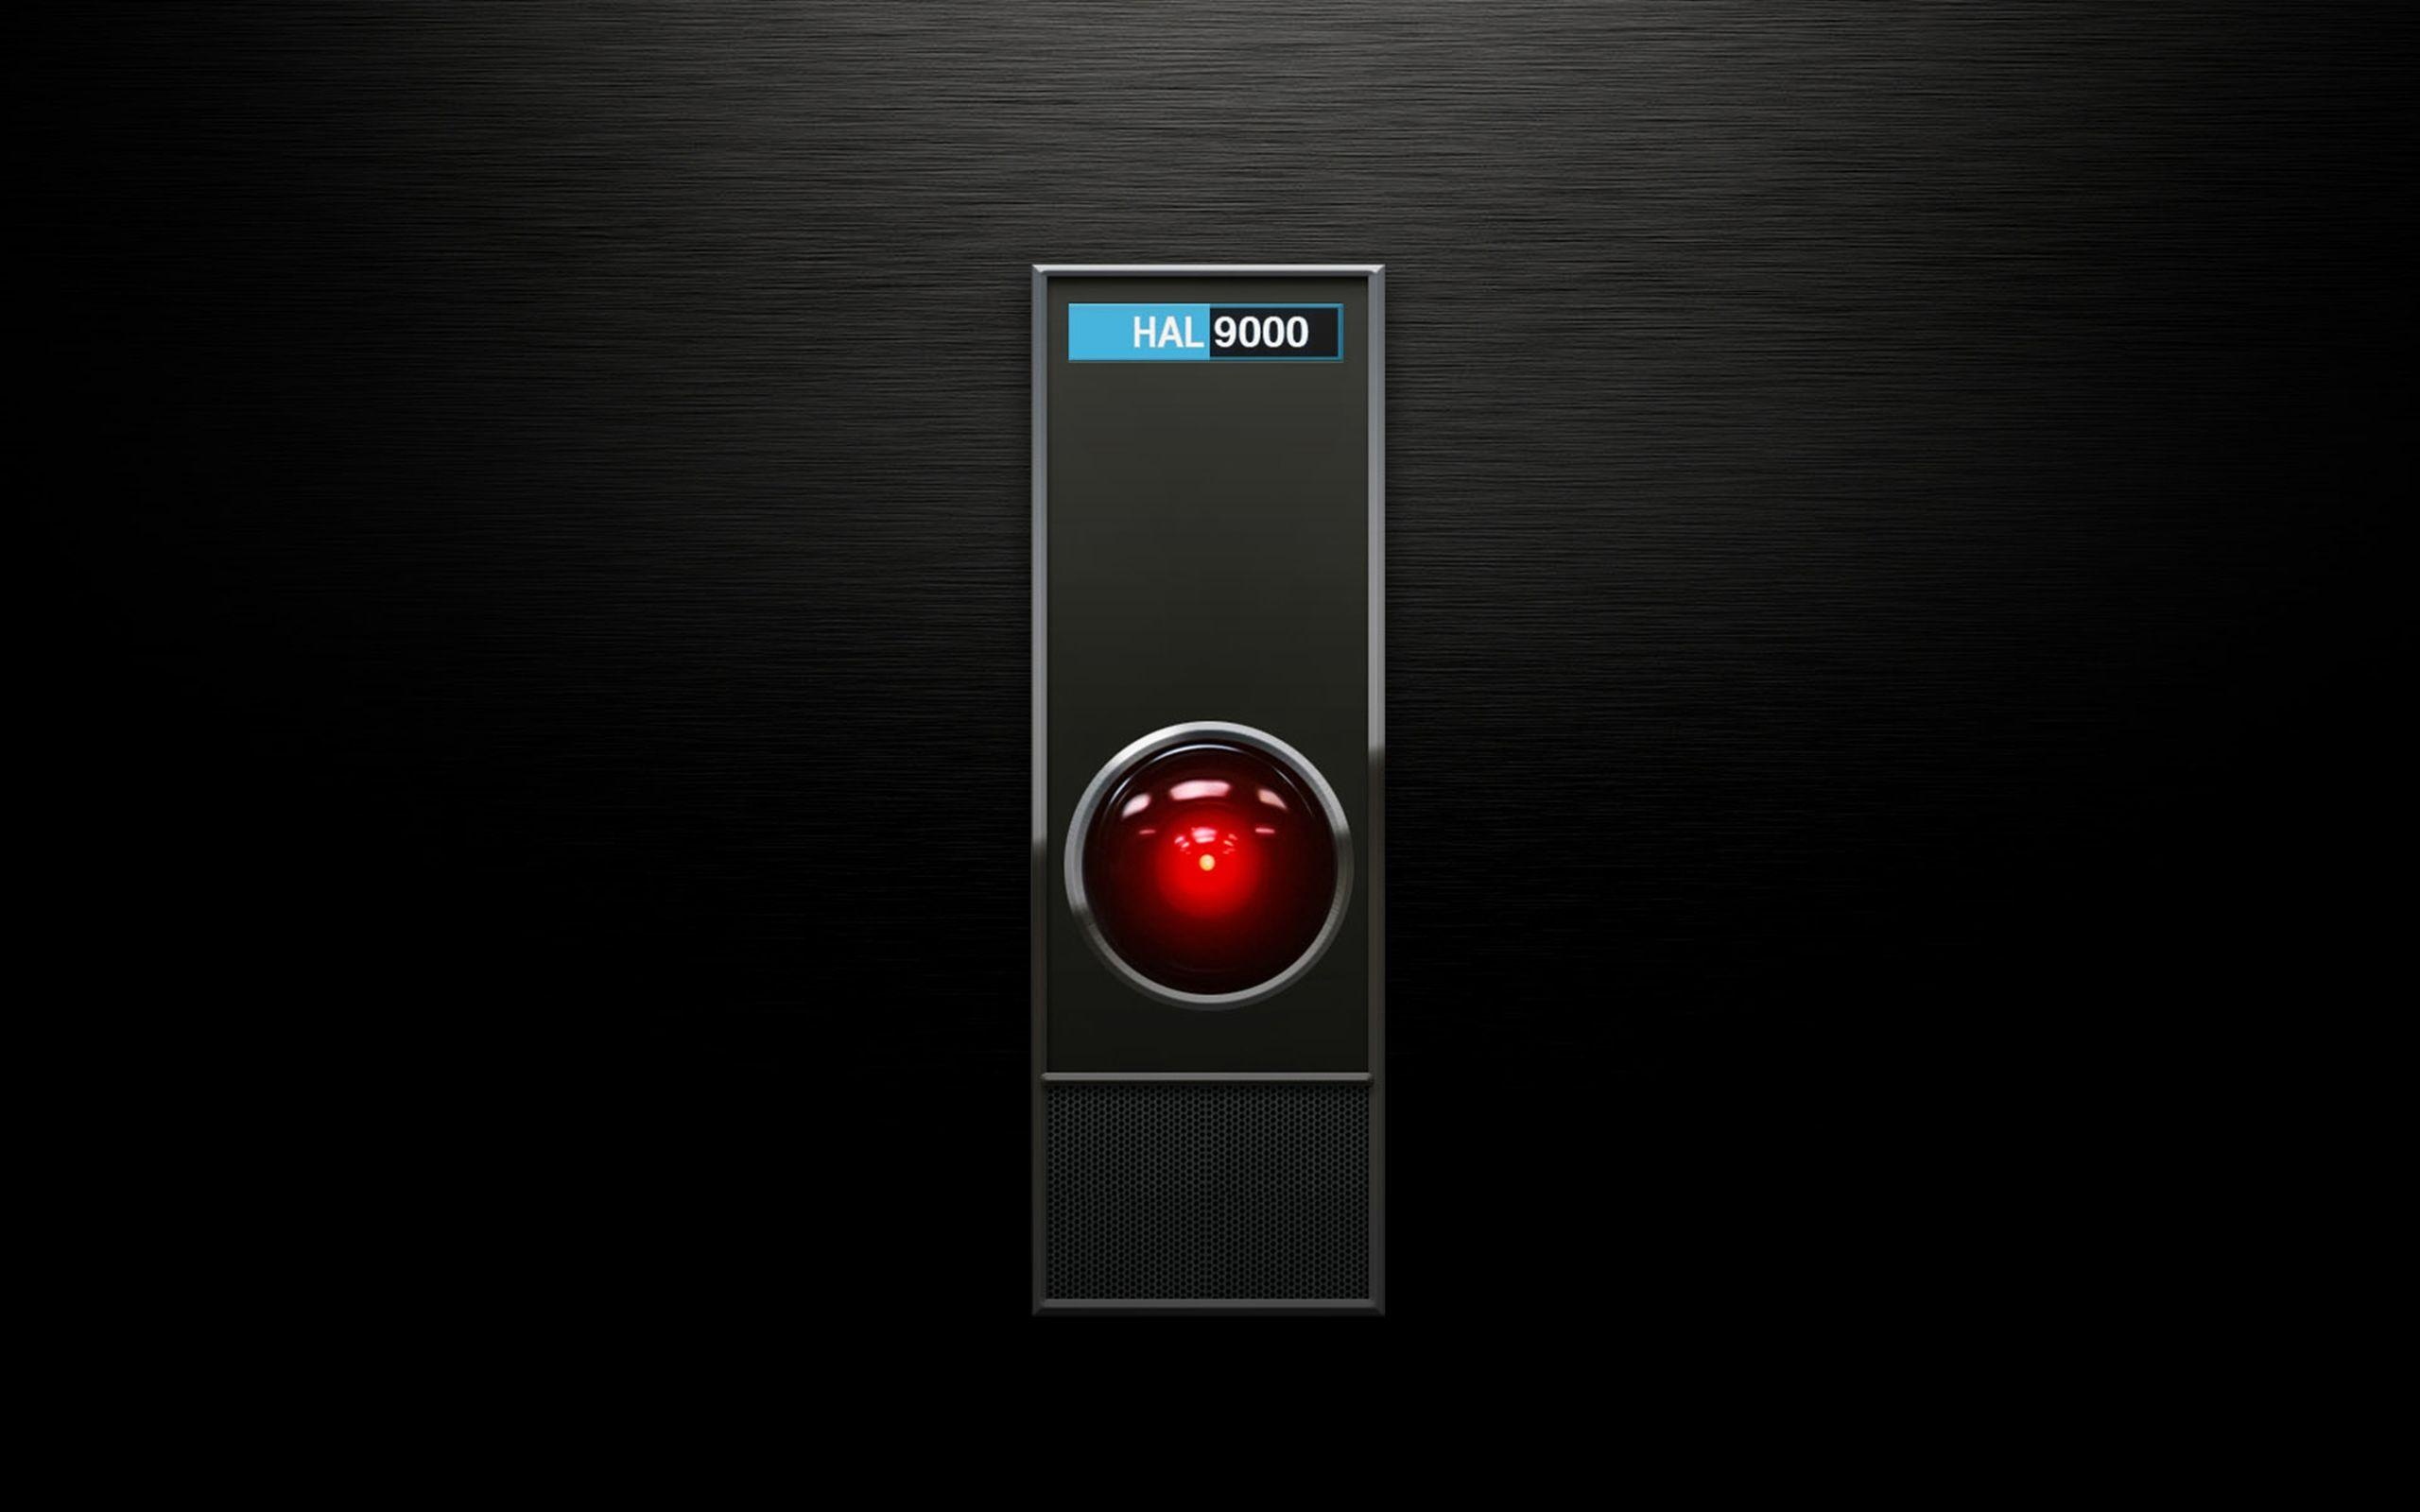 HAL 9000 wallpaper, Mysterious character, Artificial intelligence, Intriguing plot, 2560x1600 HD Desktop